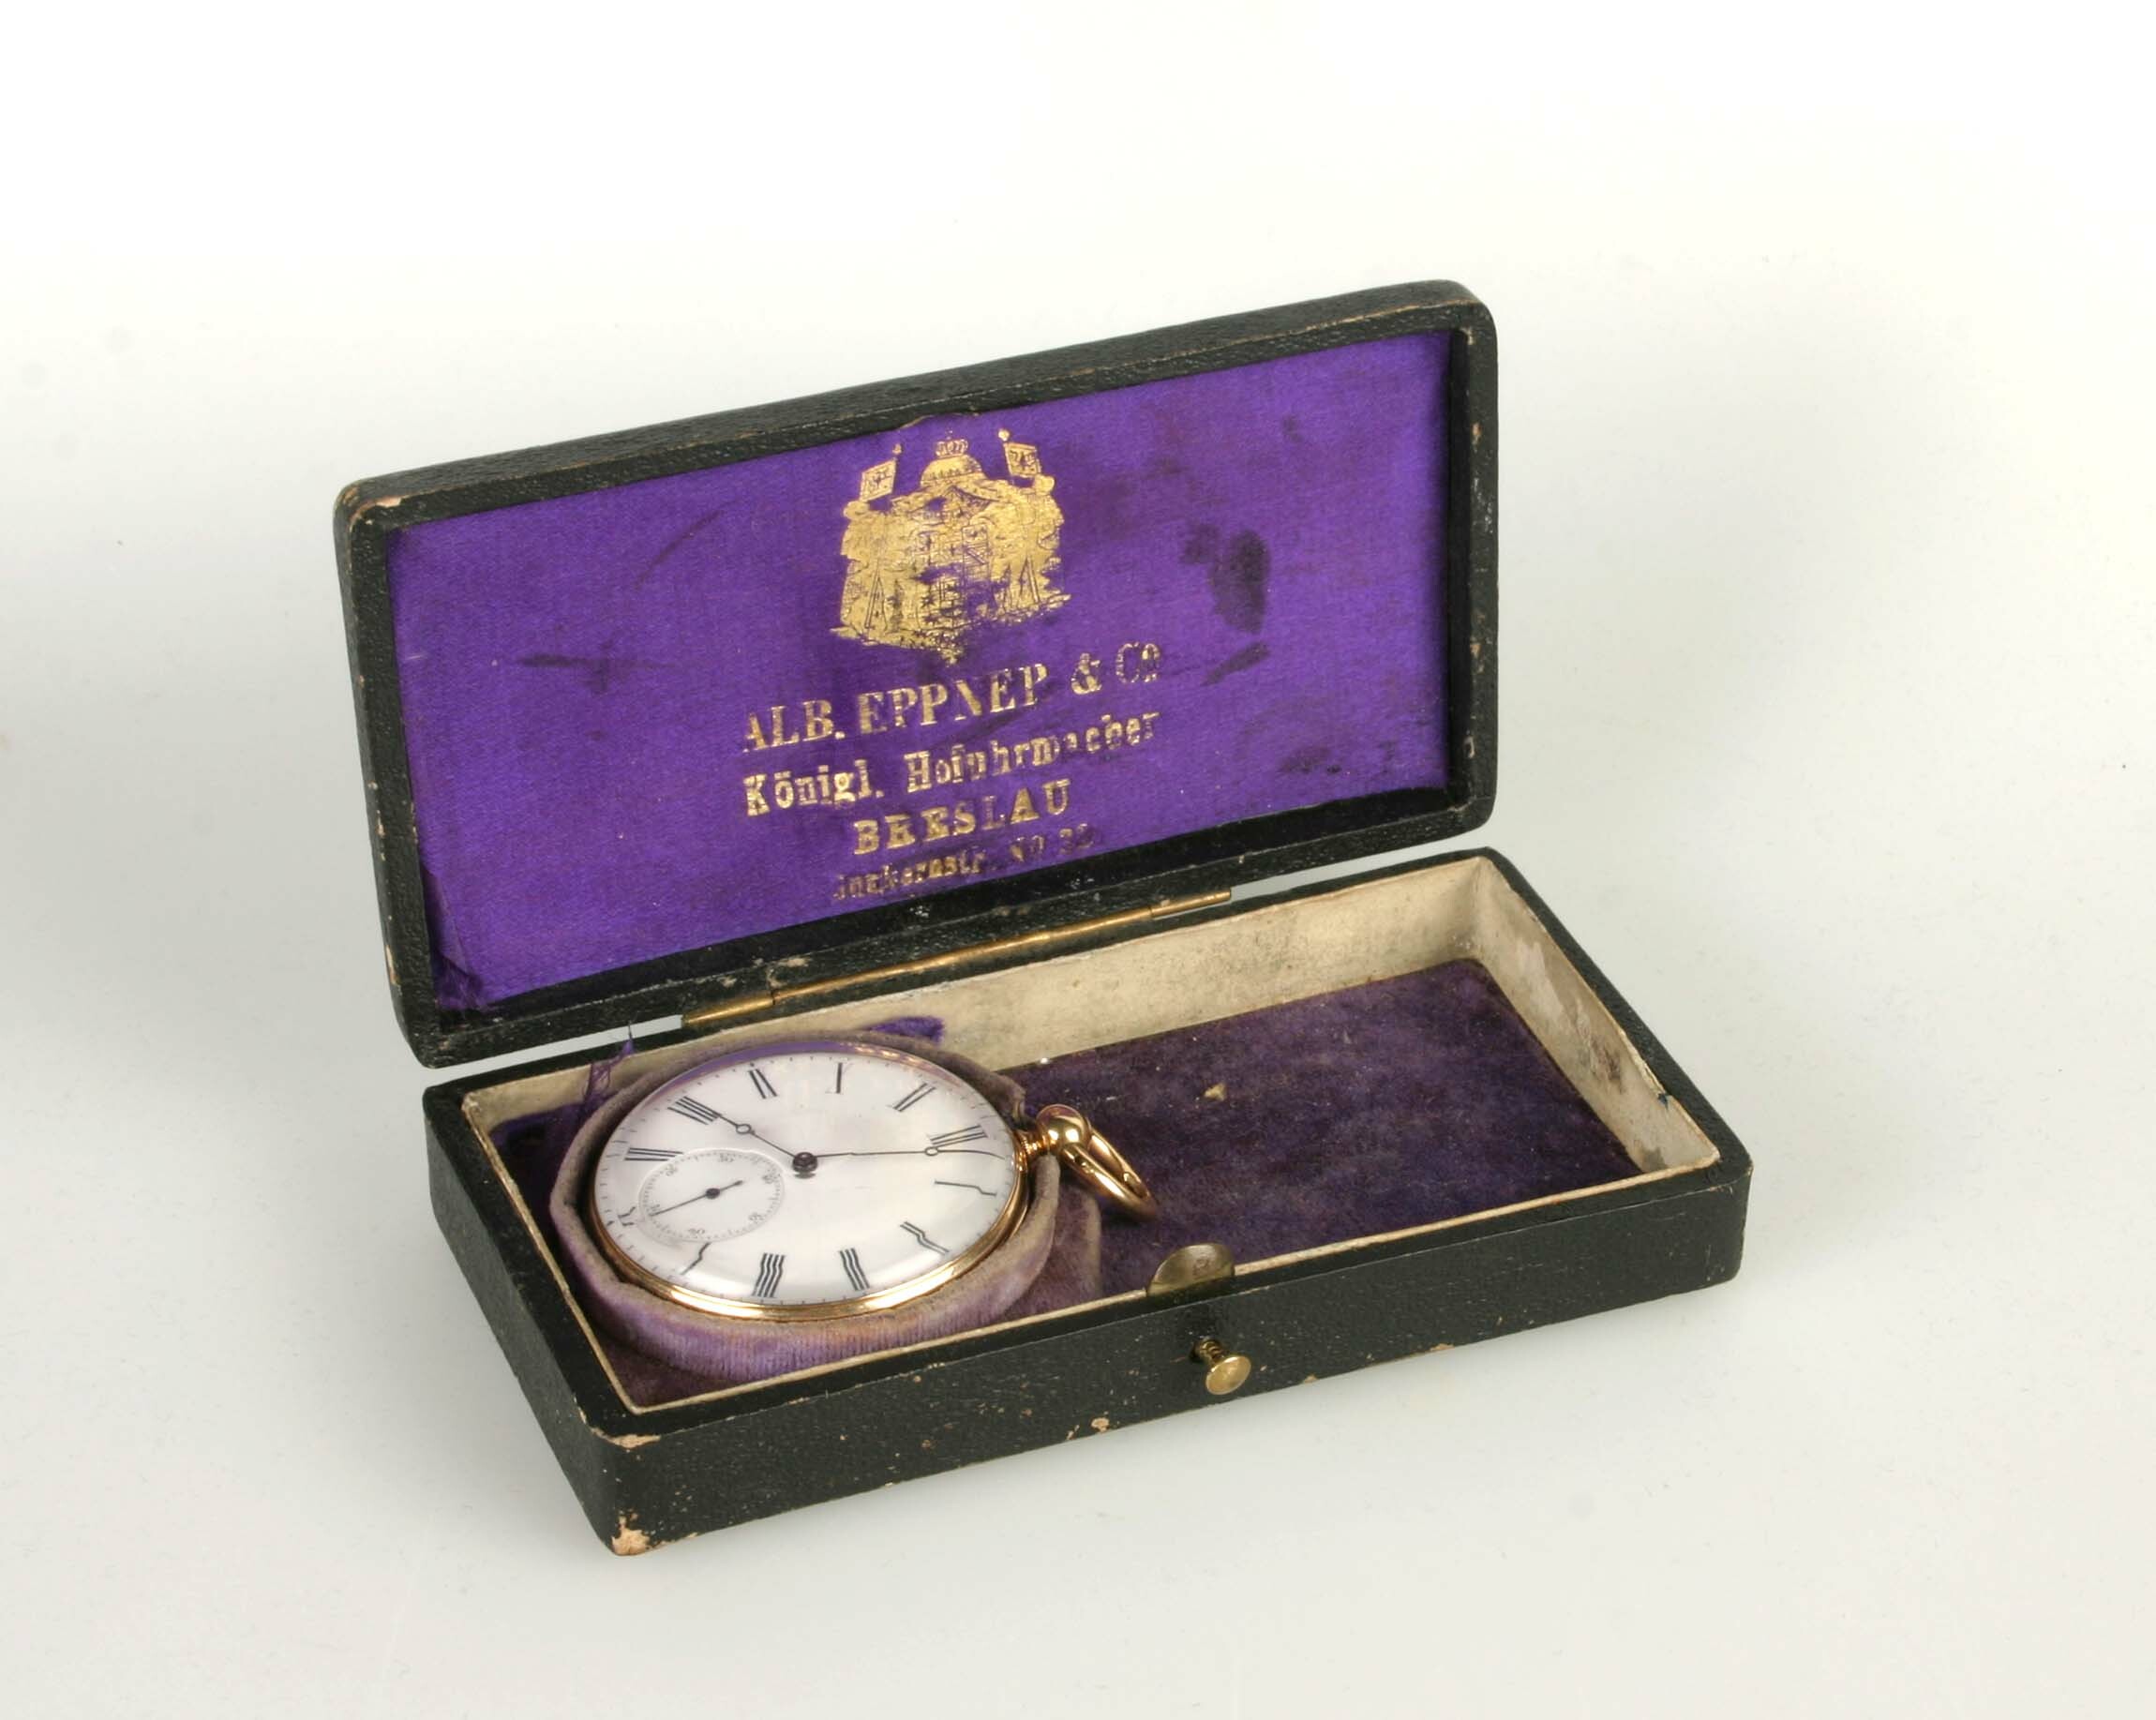 Taschenuhr mit Etui, A. Eppner und Co., Breslau und Lähn, um 1870 (Deutsches Uhrenmuseum CC BY-SA)